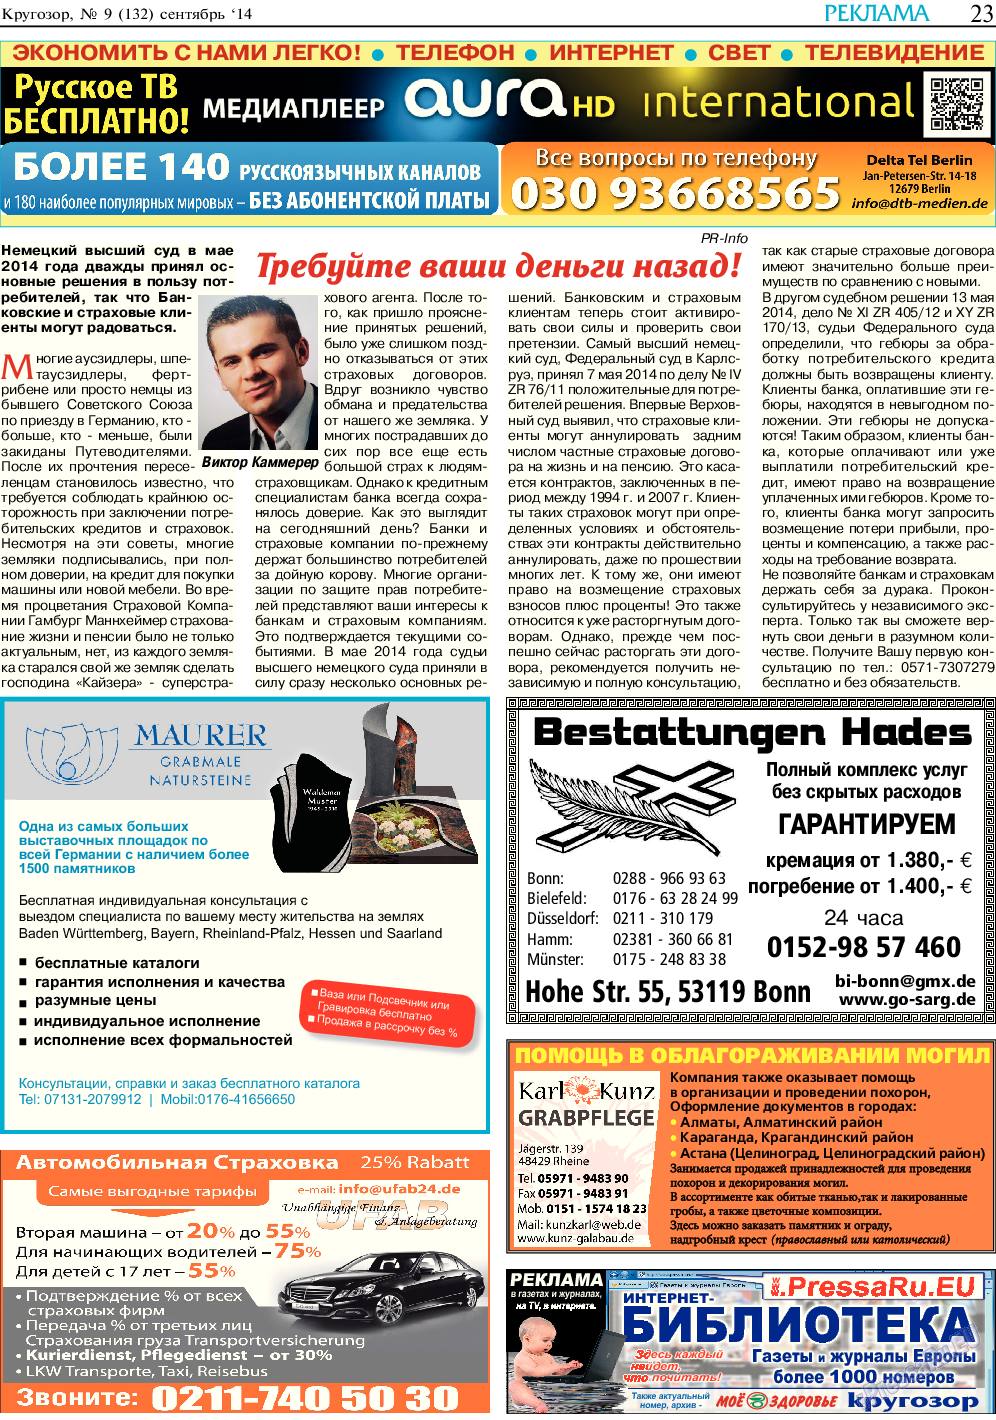 Кругозор, газета. 2014 №9 стр.23